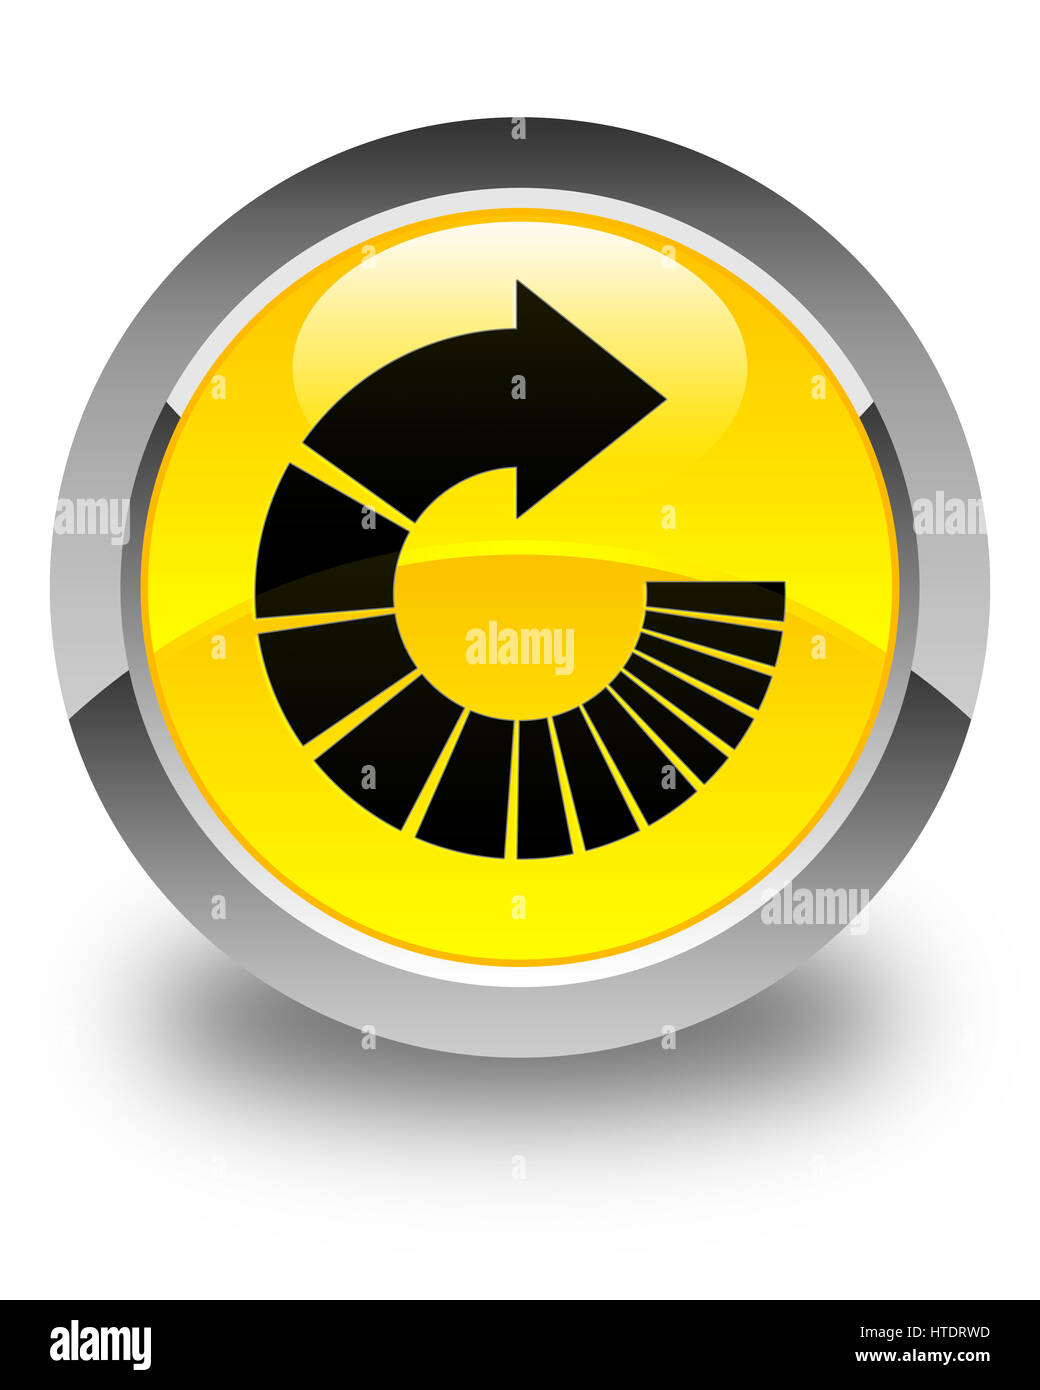 Drehen Sie Pfeil-Icon isoliert auf abstrakte Darstellung glänzend gelben runden Knopf Stockfoto